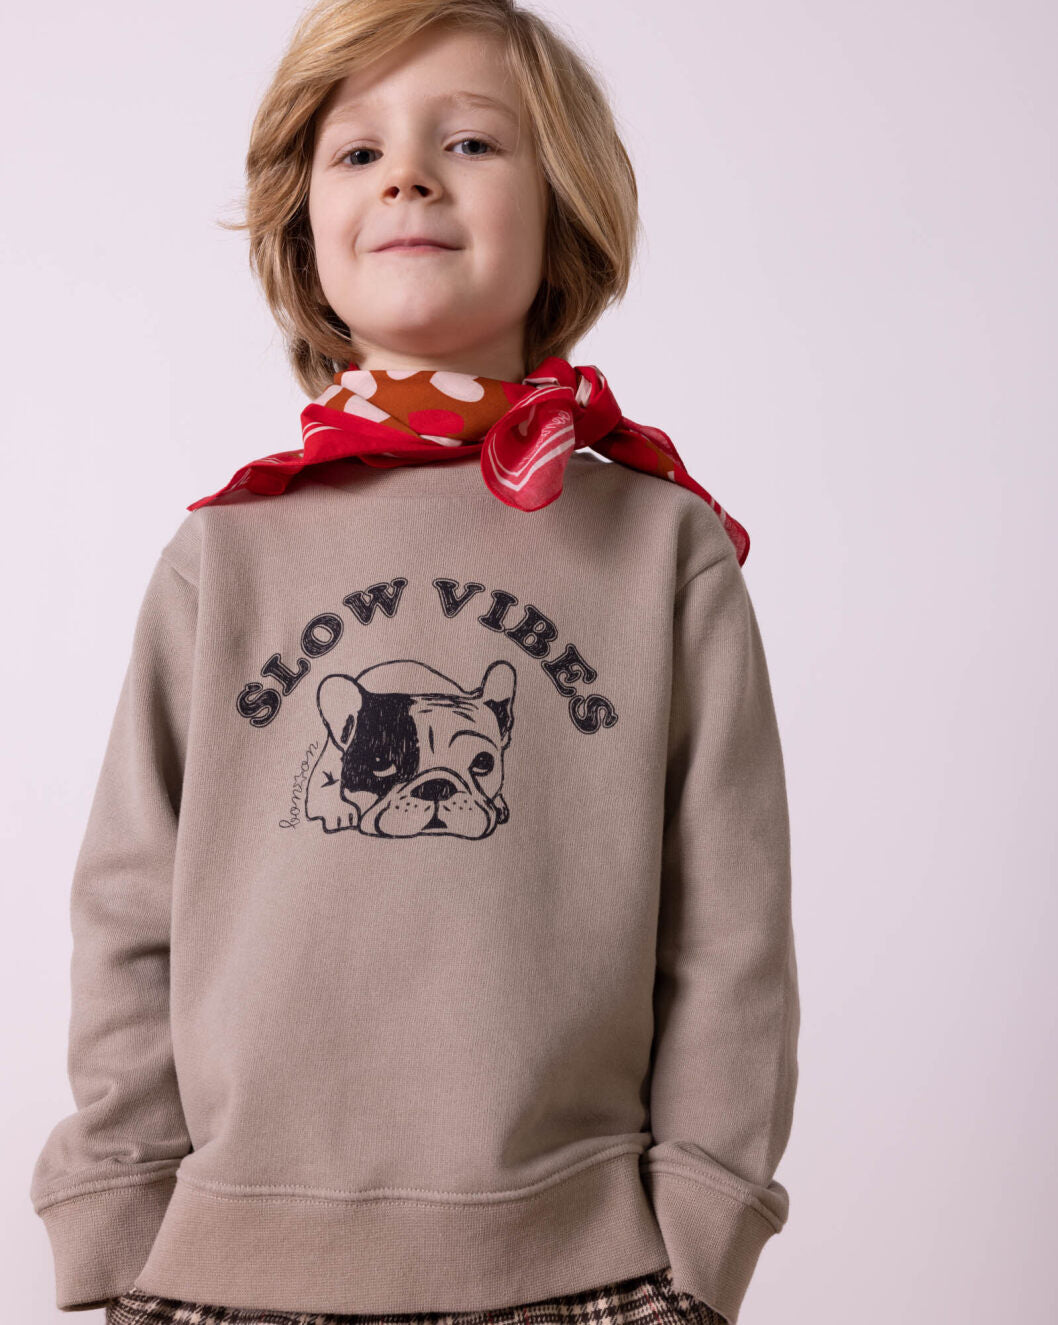 French Bulldog Sweatshirt - Bonton